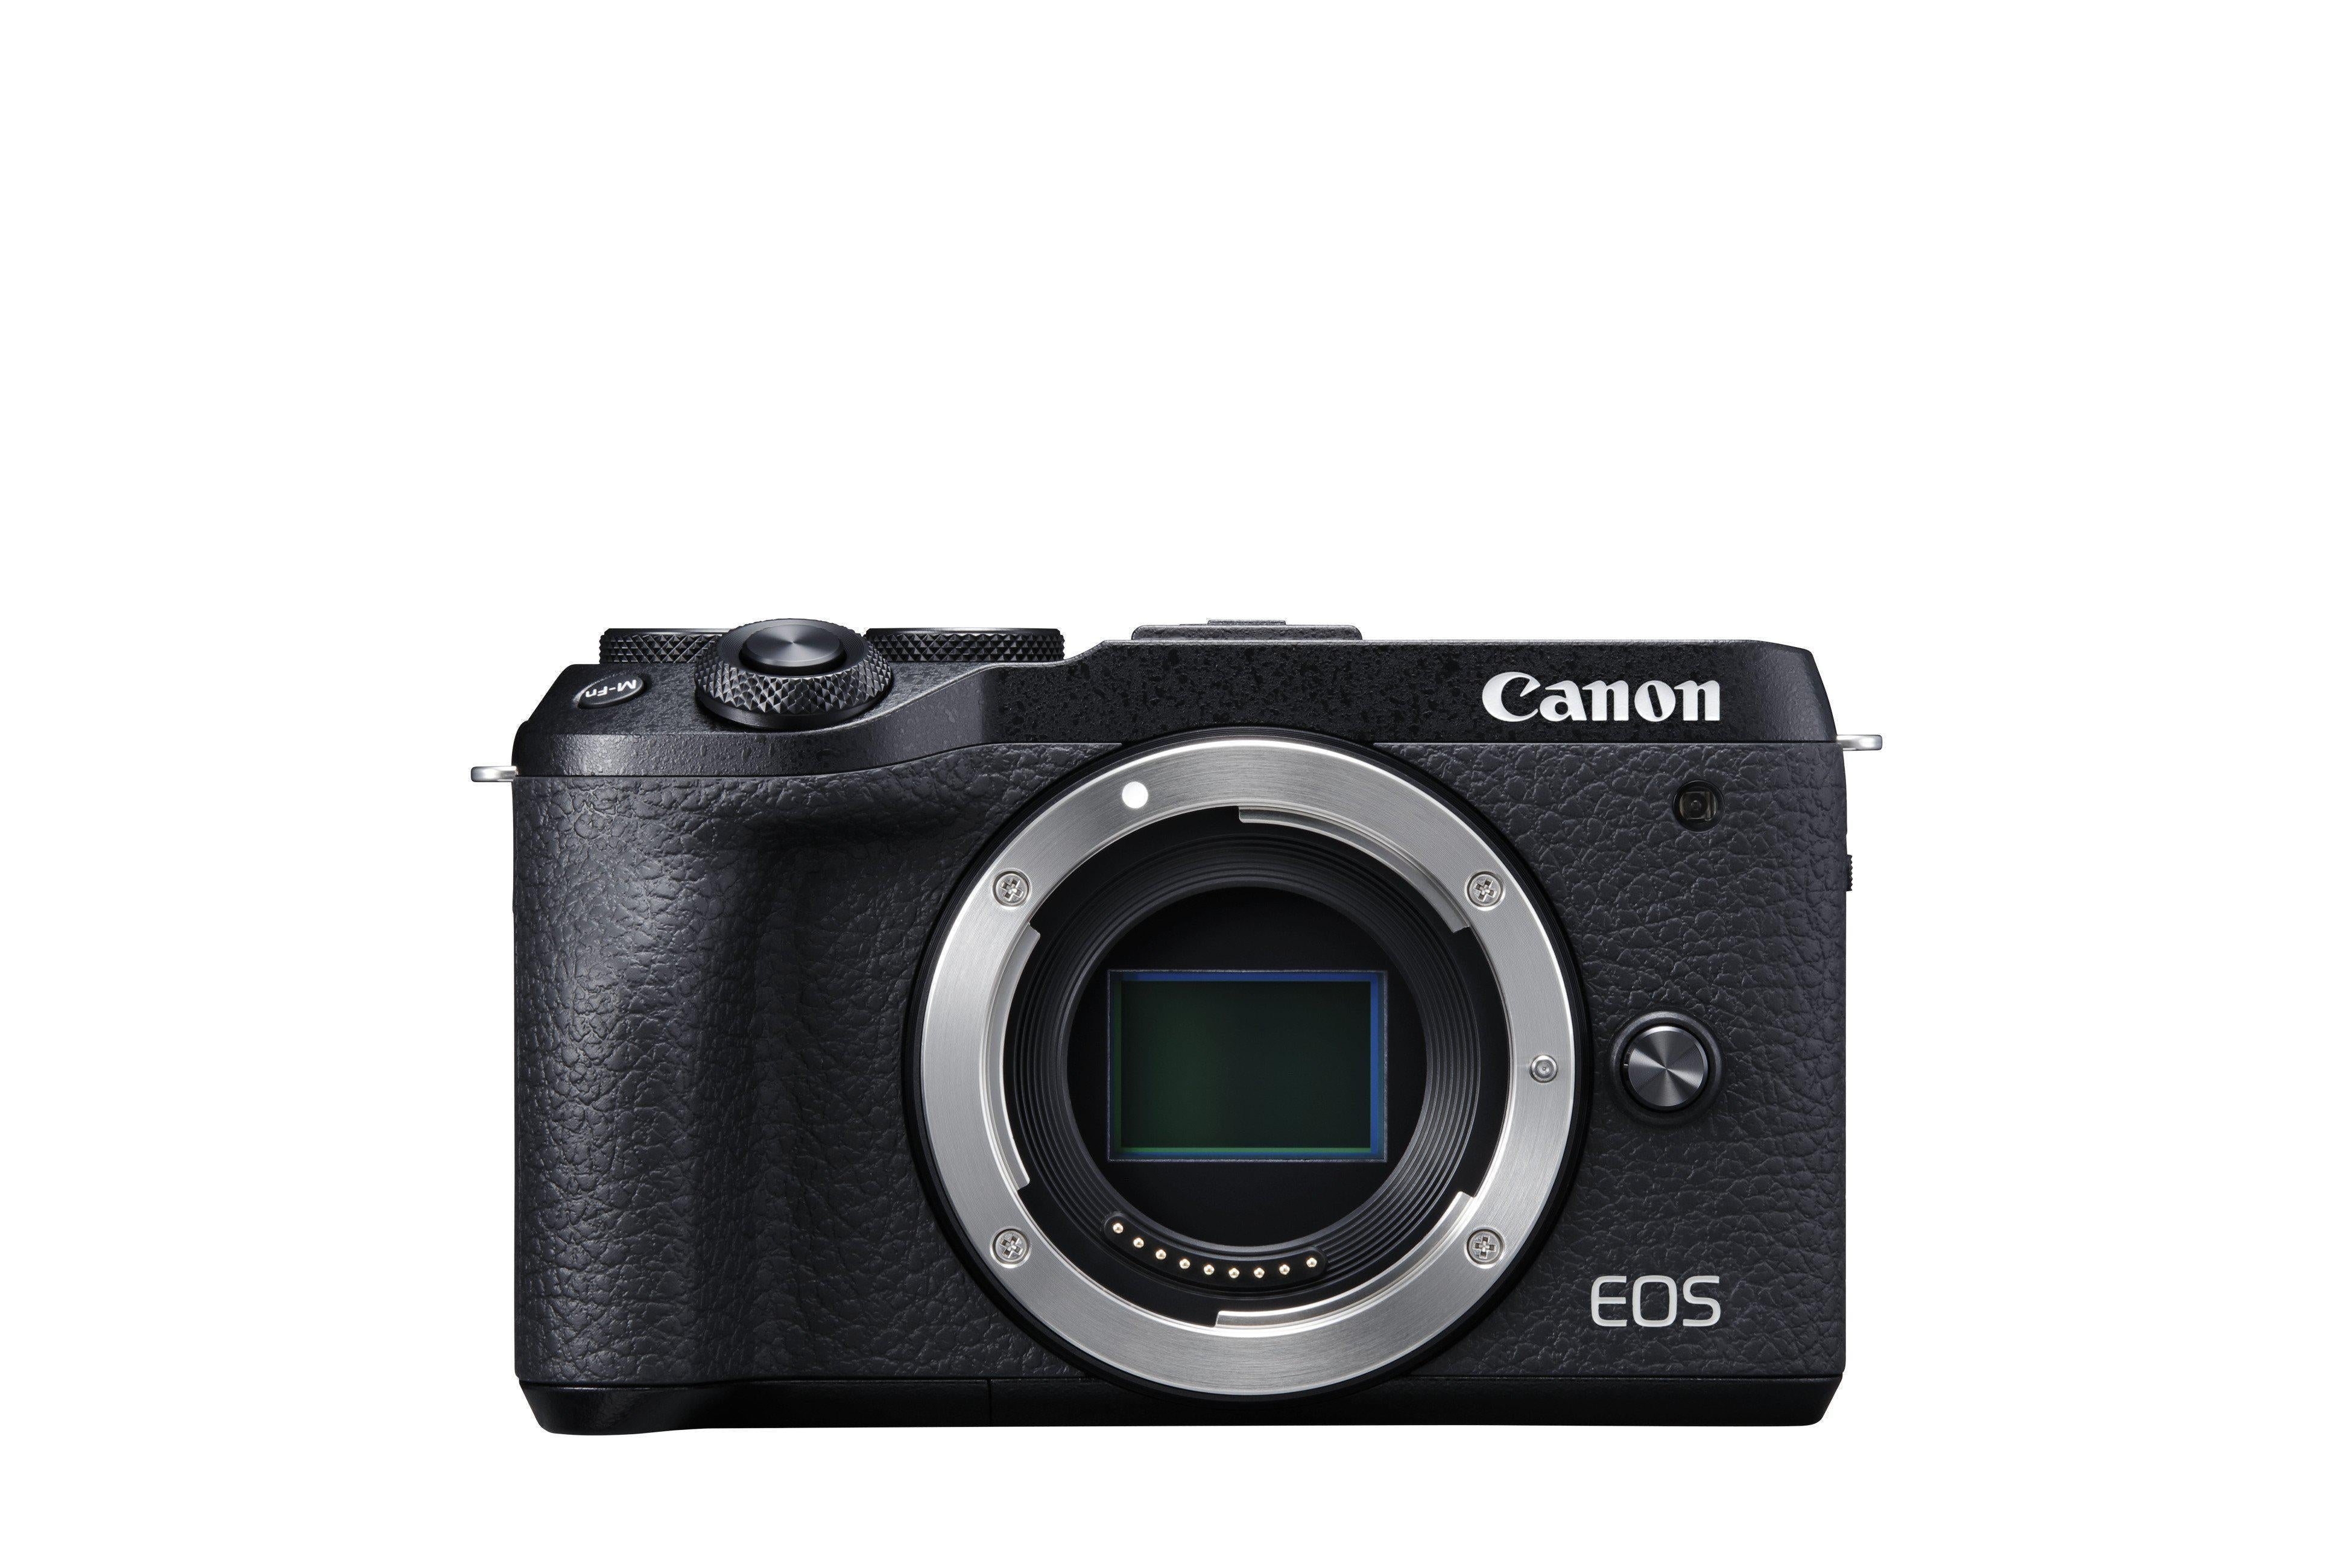 Canon EOS M6 mark II + 15-45mm + evf - Gar. Canon Italia - Cine Sud è da 47 anni sul mercato!